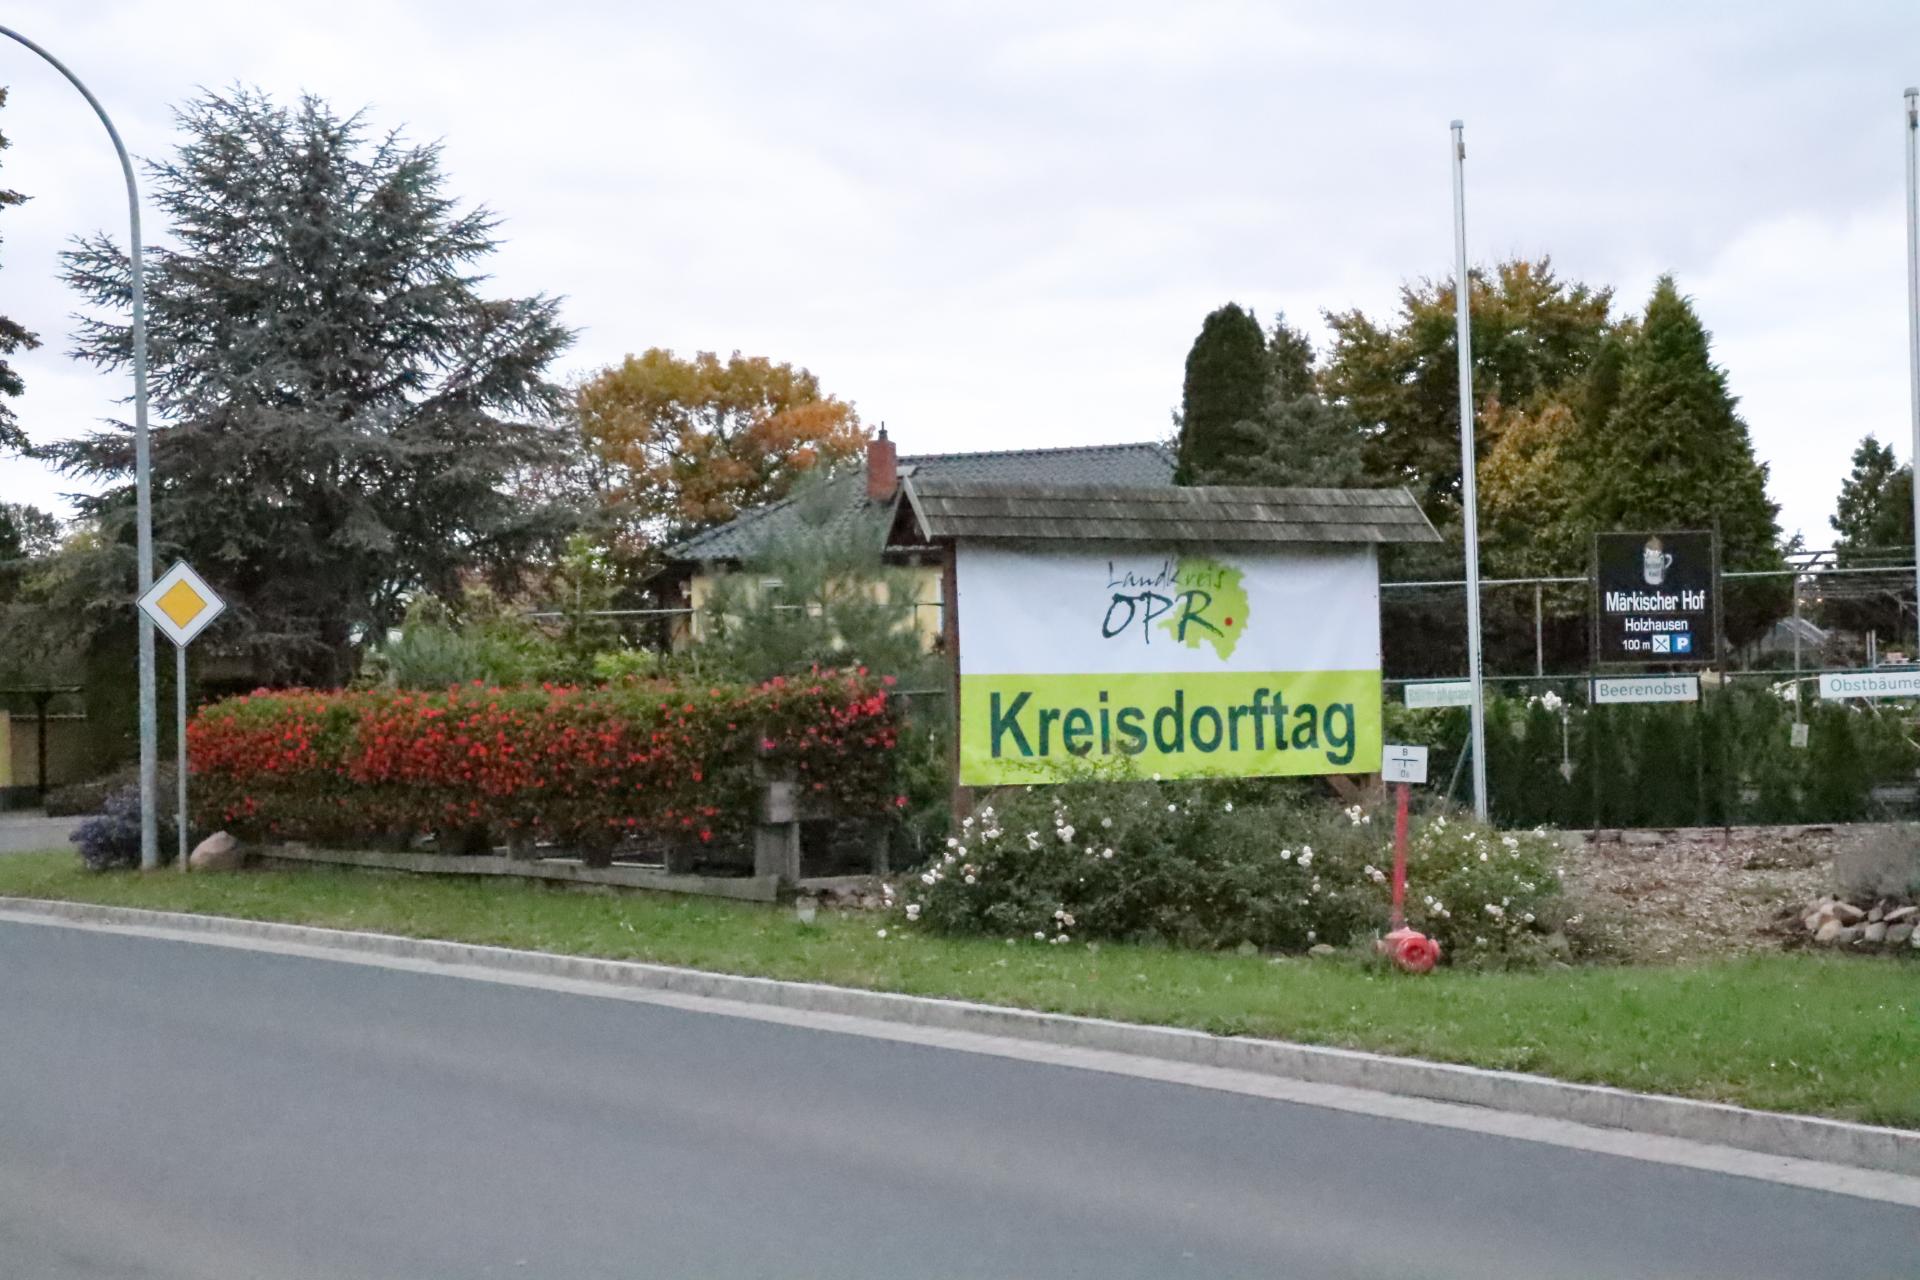 Herzlich Willkommen zum Kreisdorftag in Holzhausen